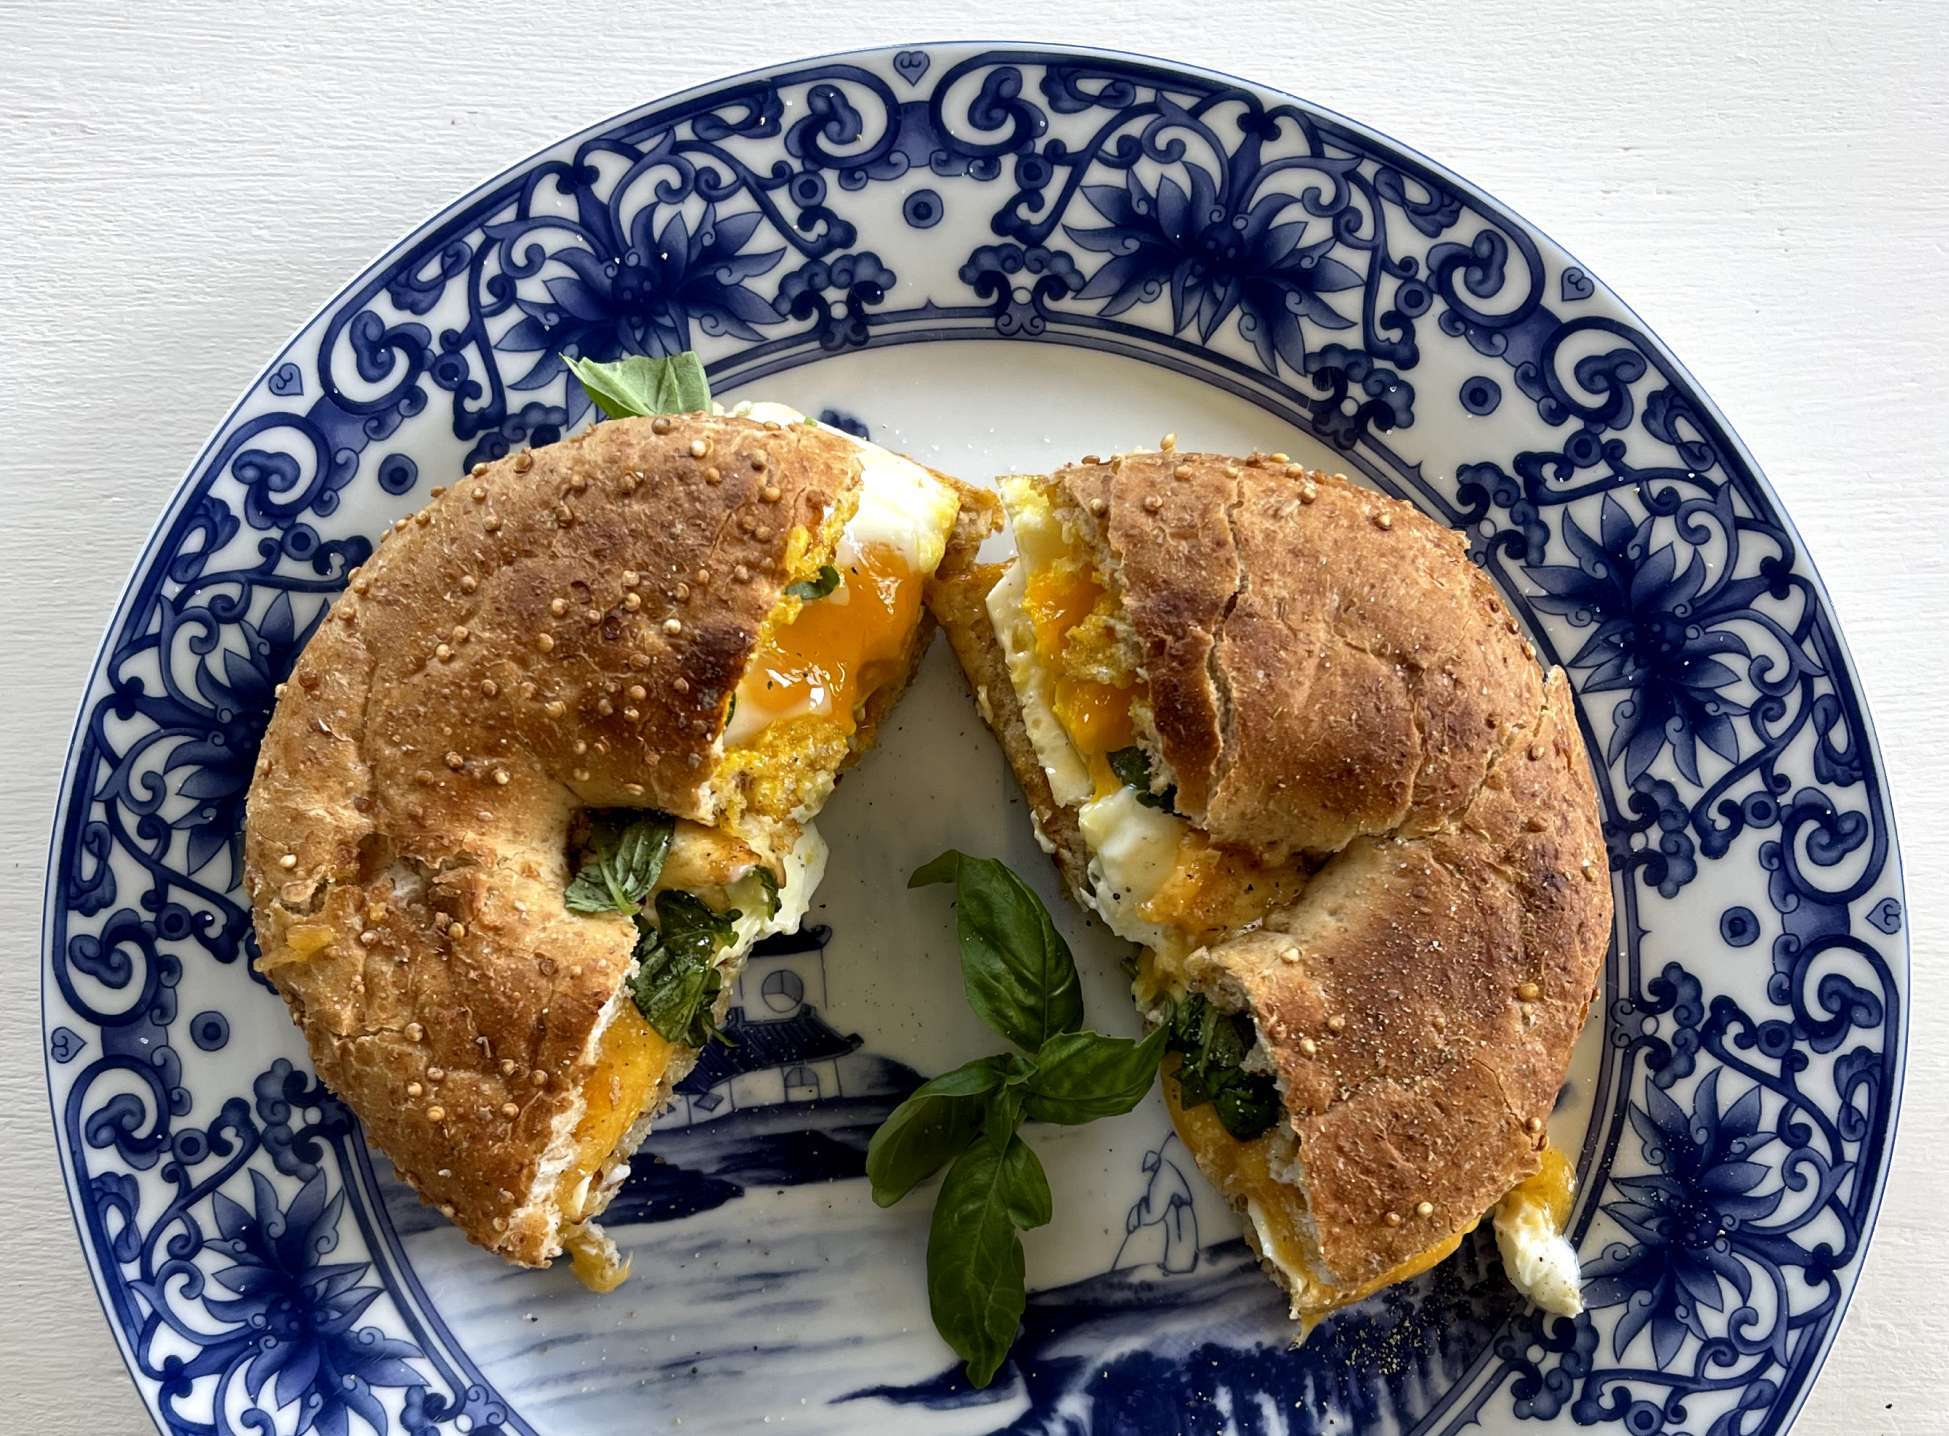 Egg, Spinach & Cheddar Breakfast Sandwich